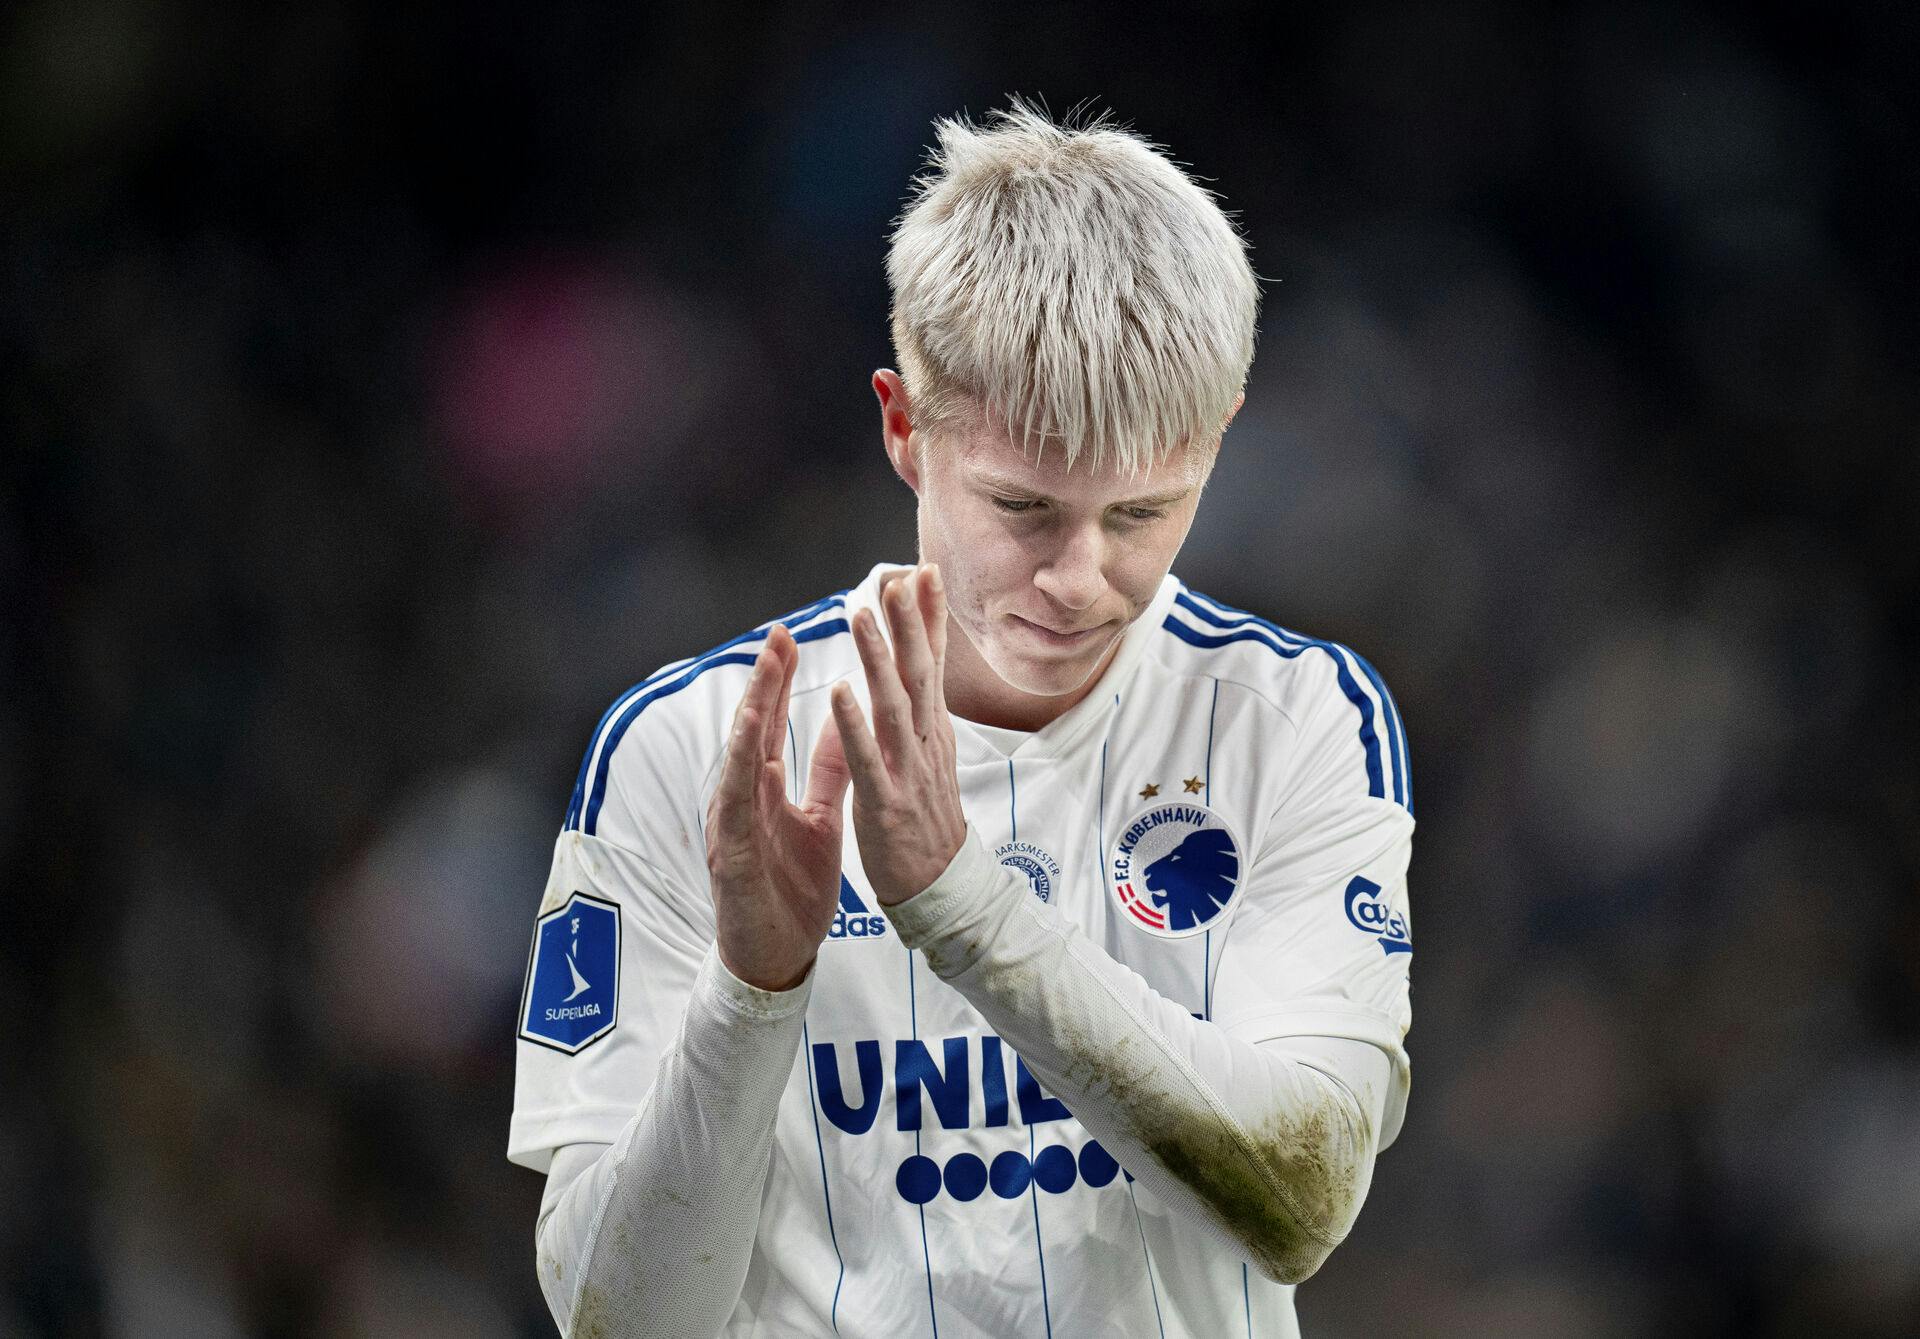 FCKs Hákon Arnar Haraldsson skiftes ud under superligakampen mellem FC København og AaB i Parken søndag den 26. februar 2023. (Foto: Liselotte Sabroe/Ritzau Scanpix)